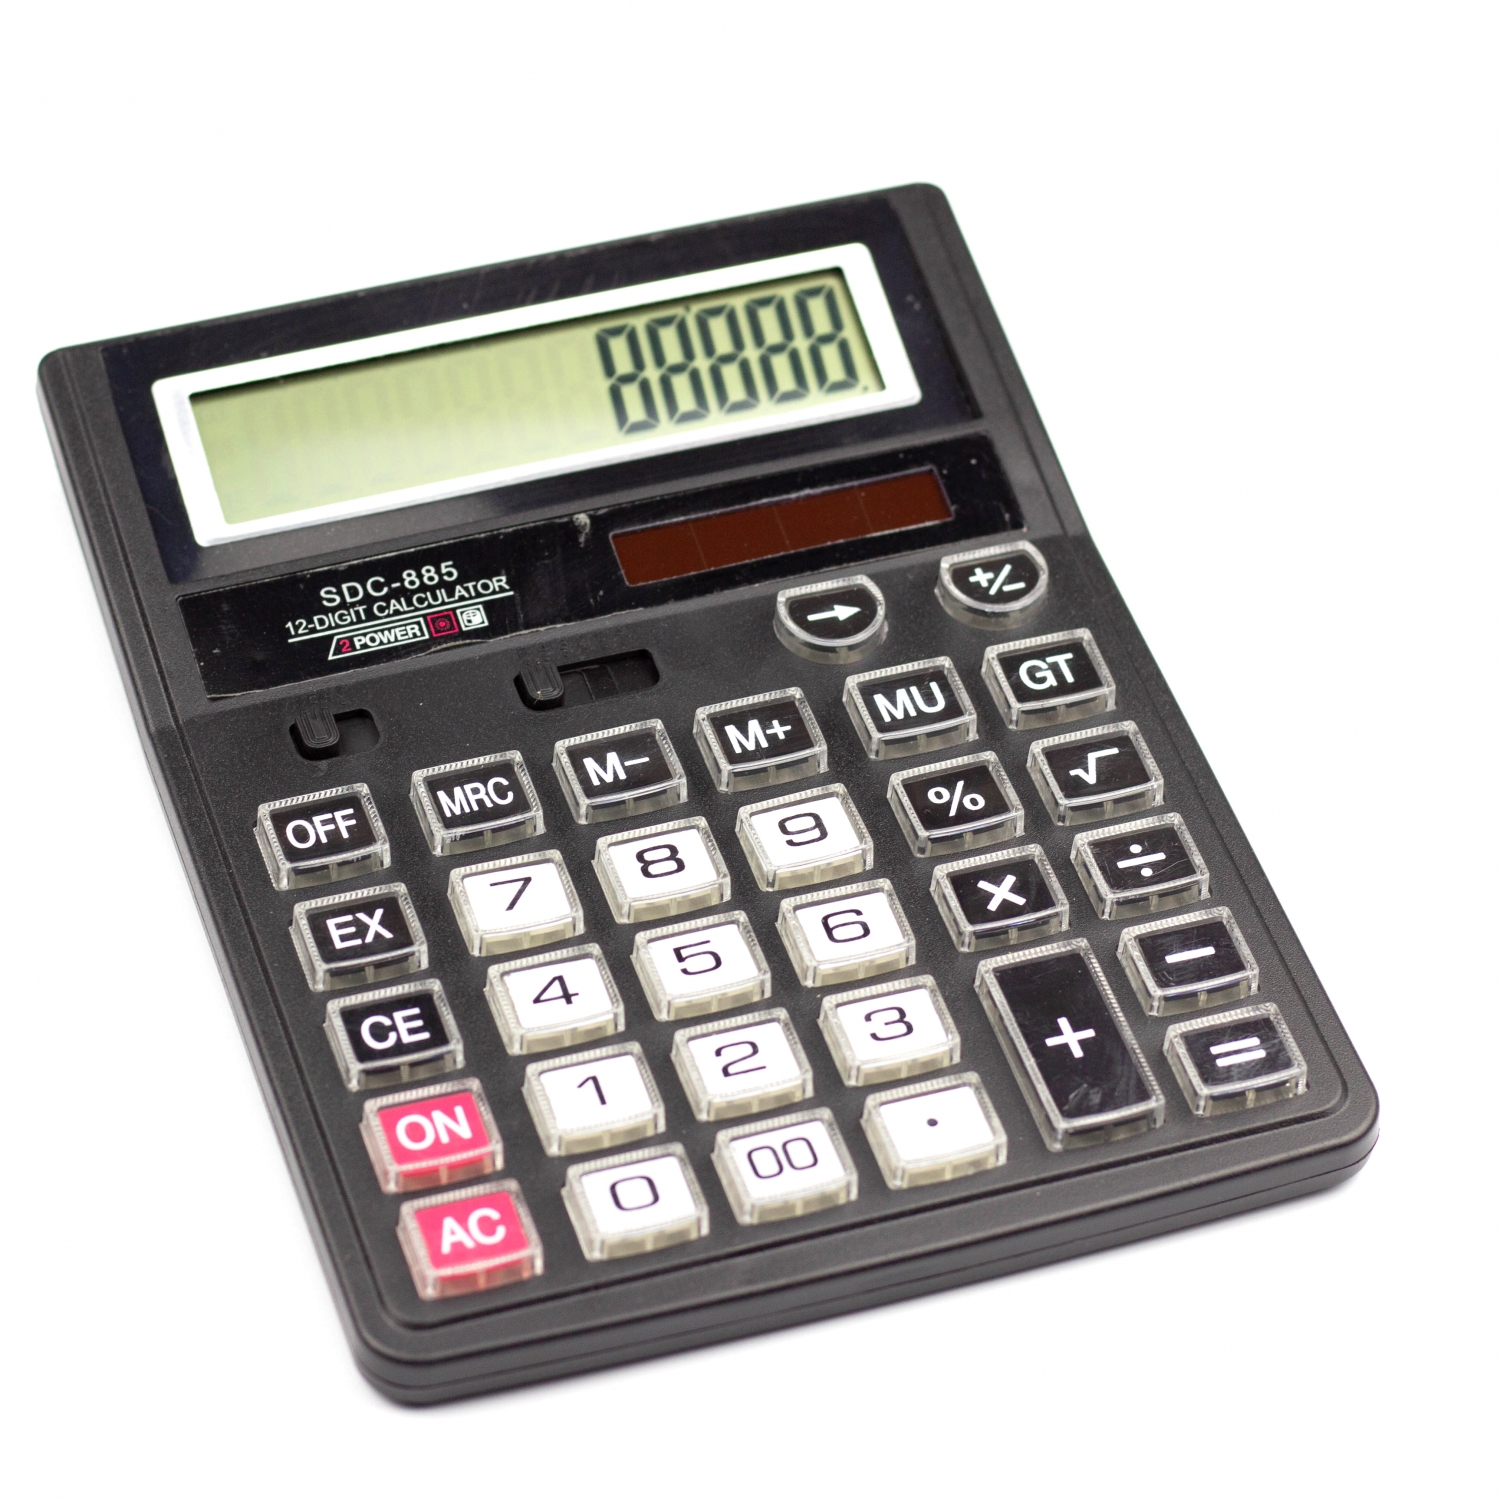 Калькулятор SDC-885 в коробке 12 разрядный AL6350 - Набережные Челны 